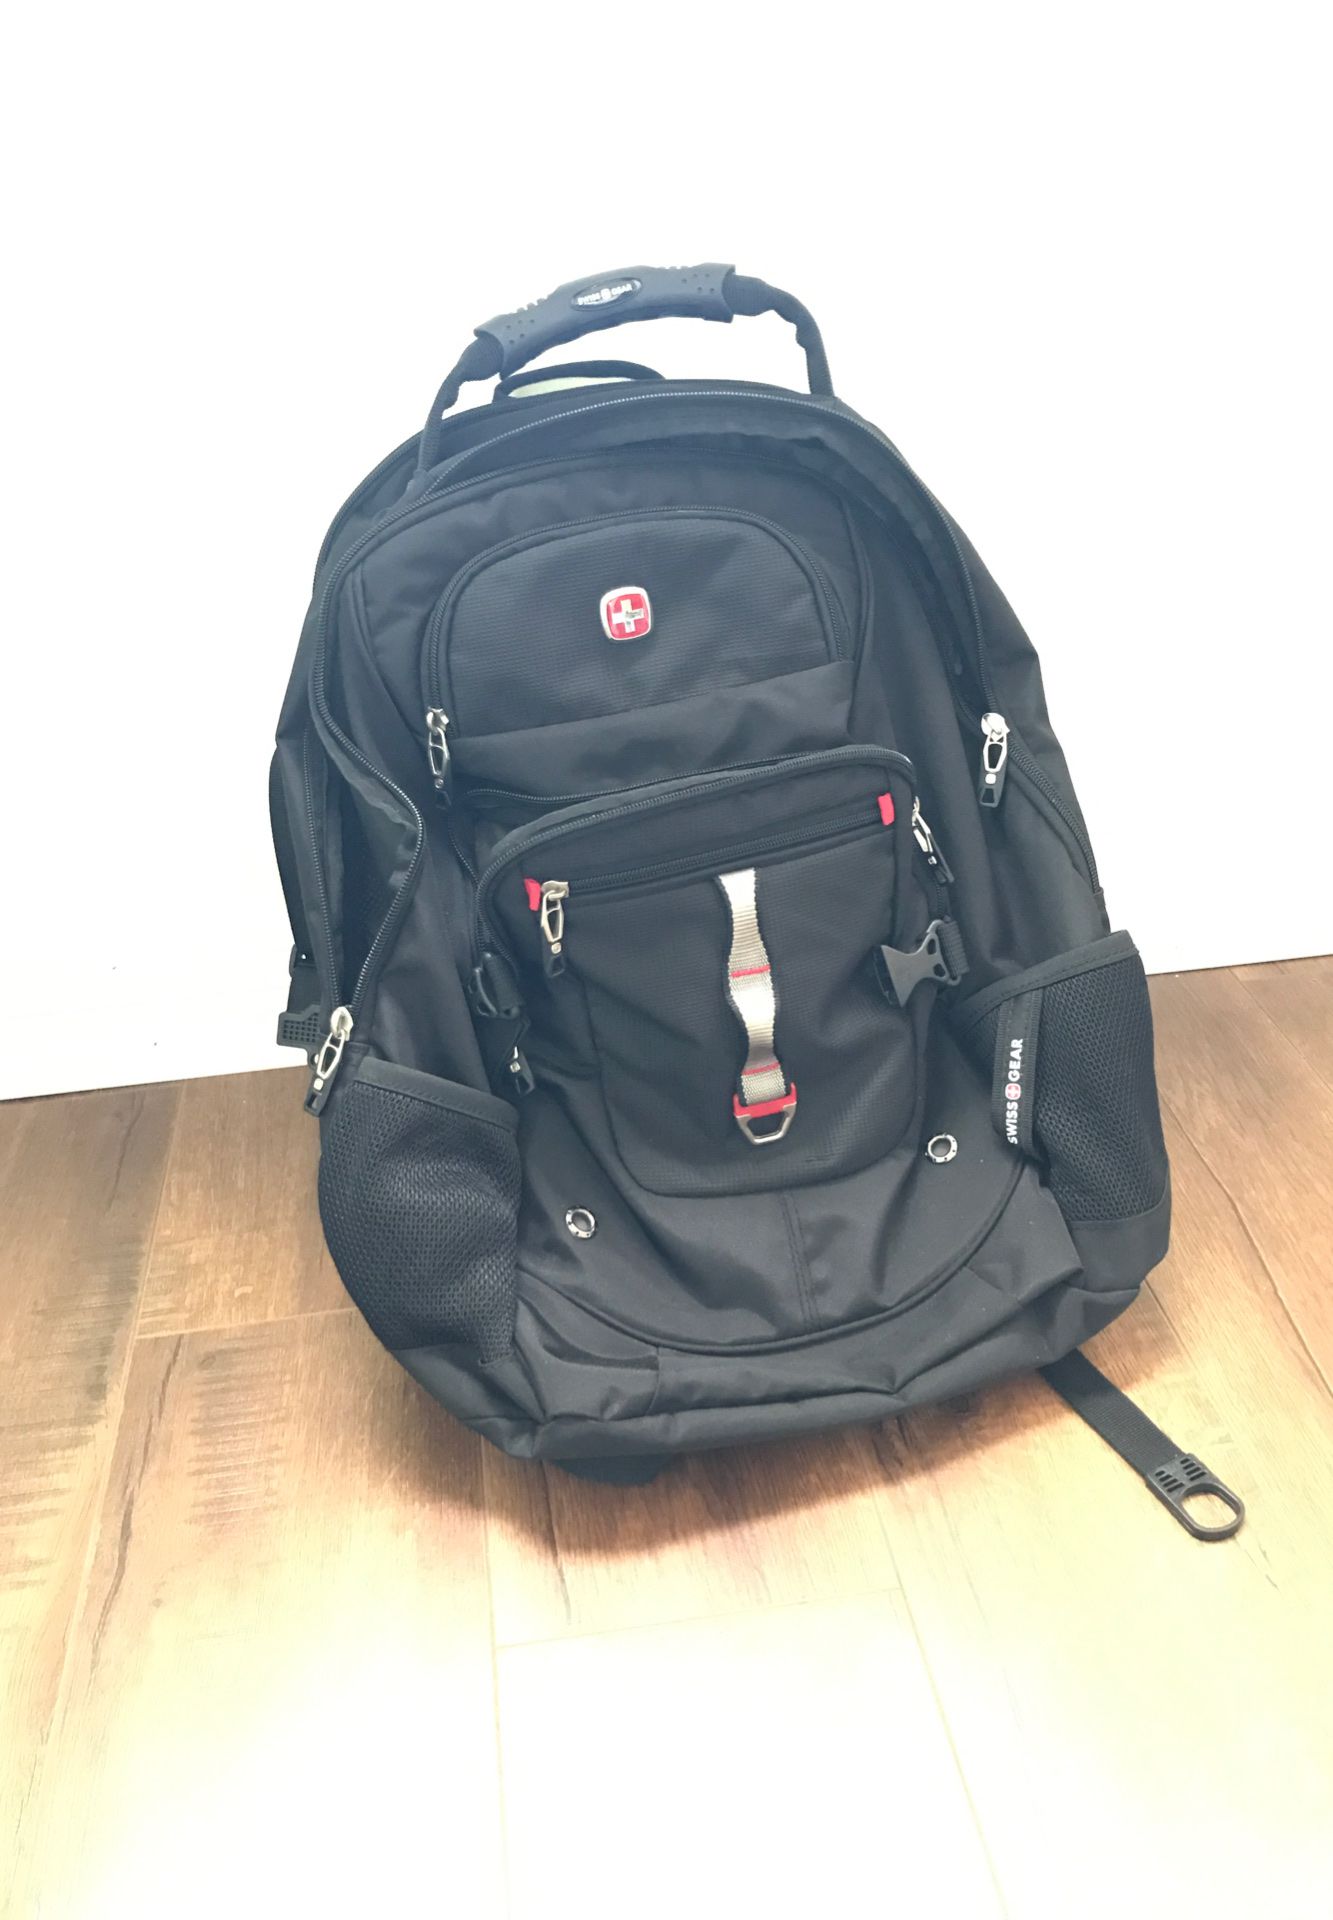 Swiss Gear Traveling or School backpack